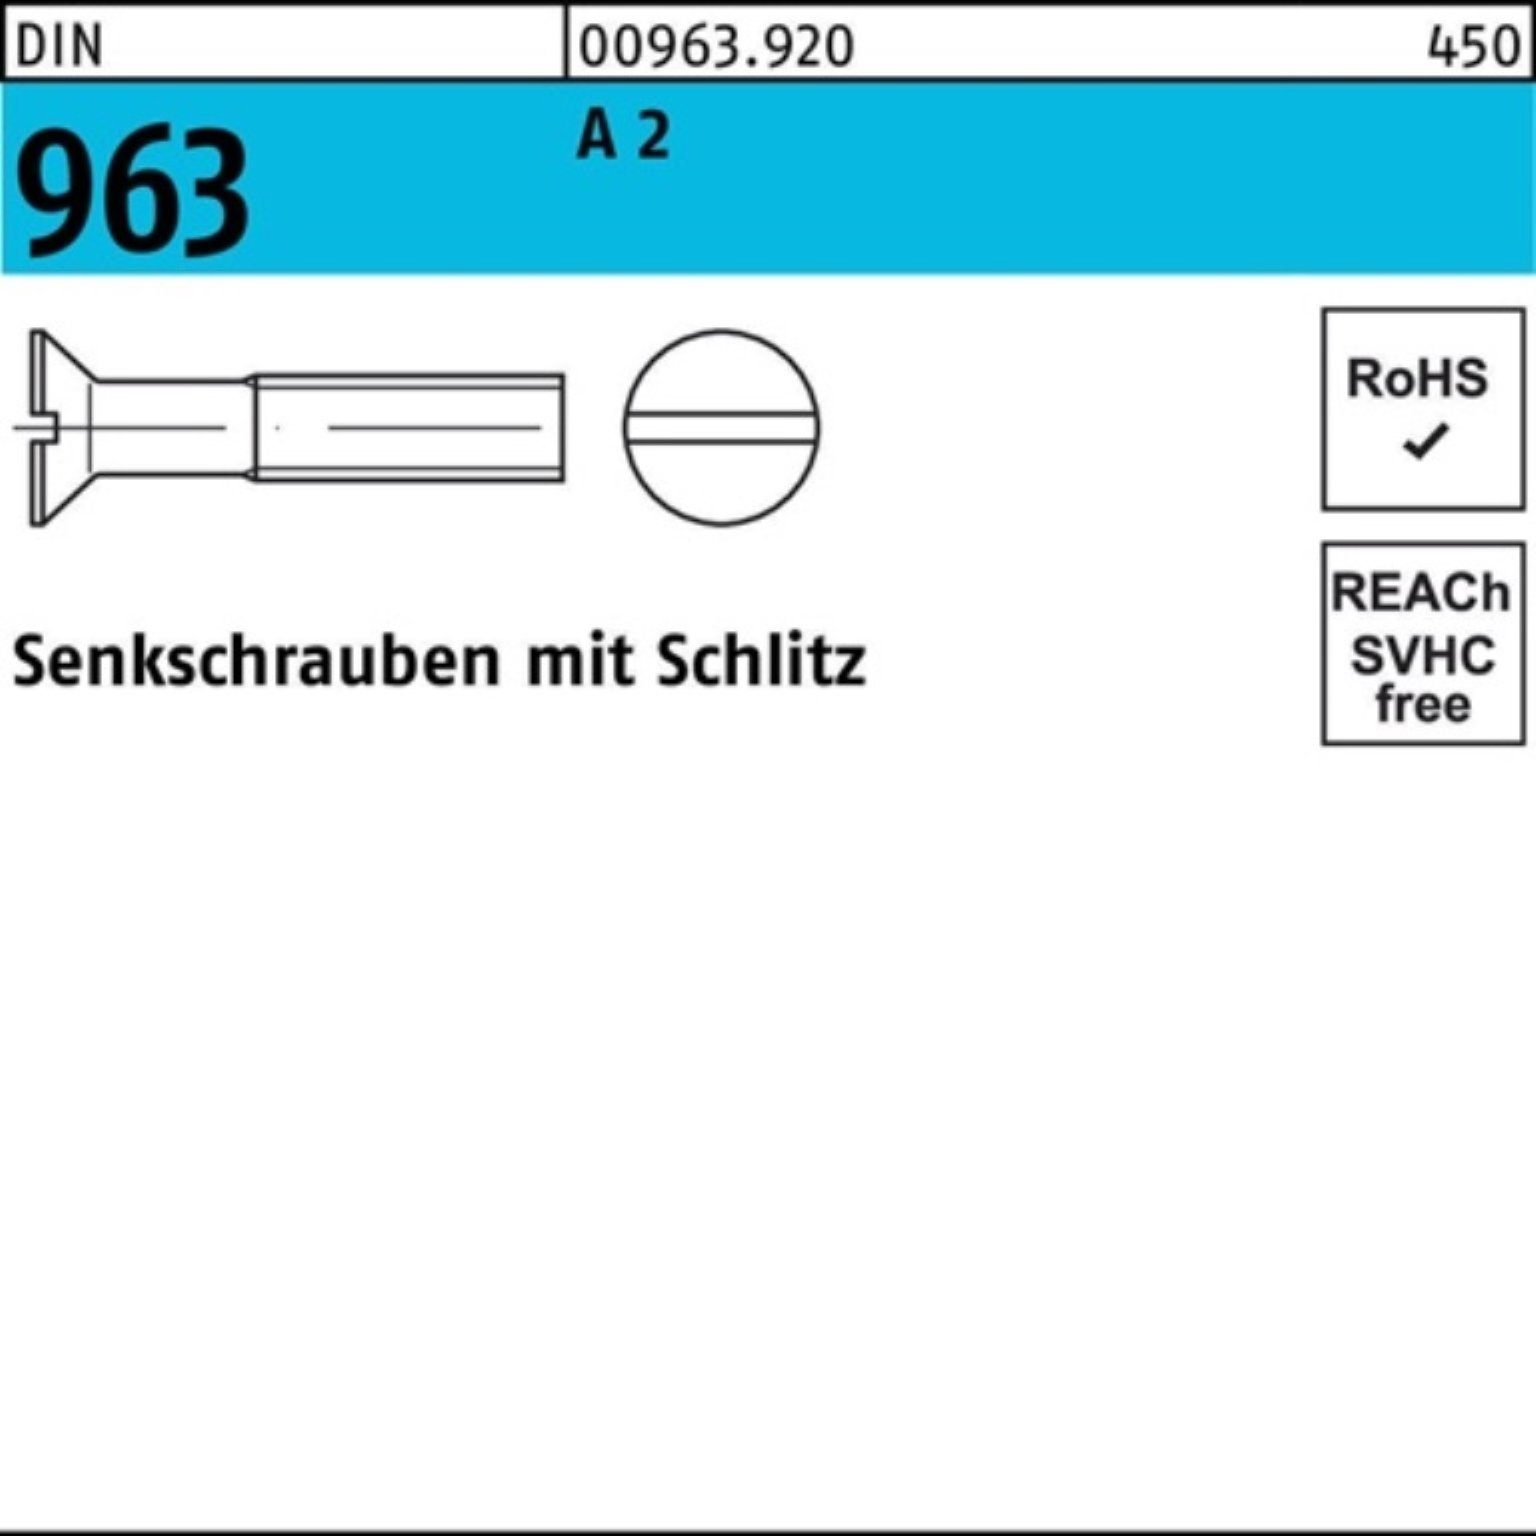 Reyher Senkschraube 1000er DIN DIN Stück Pack Schlitz 963 M1,4x 1000 Senkschraube 9 8 2 A